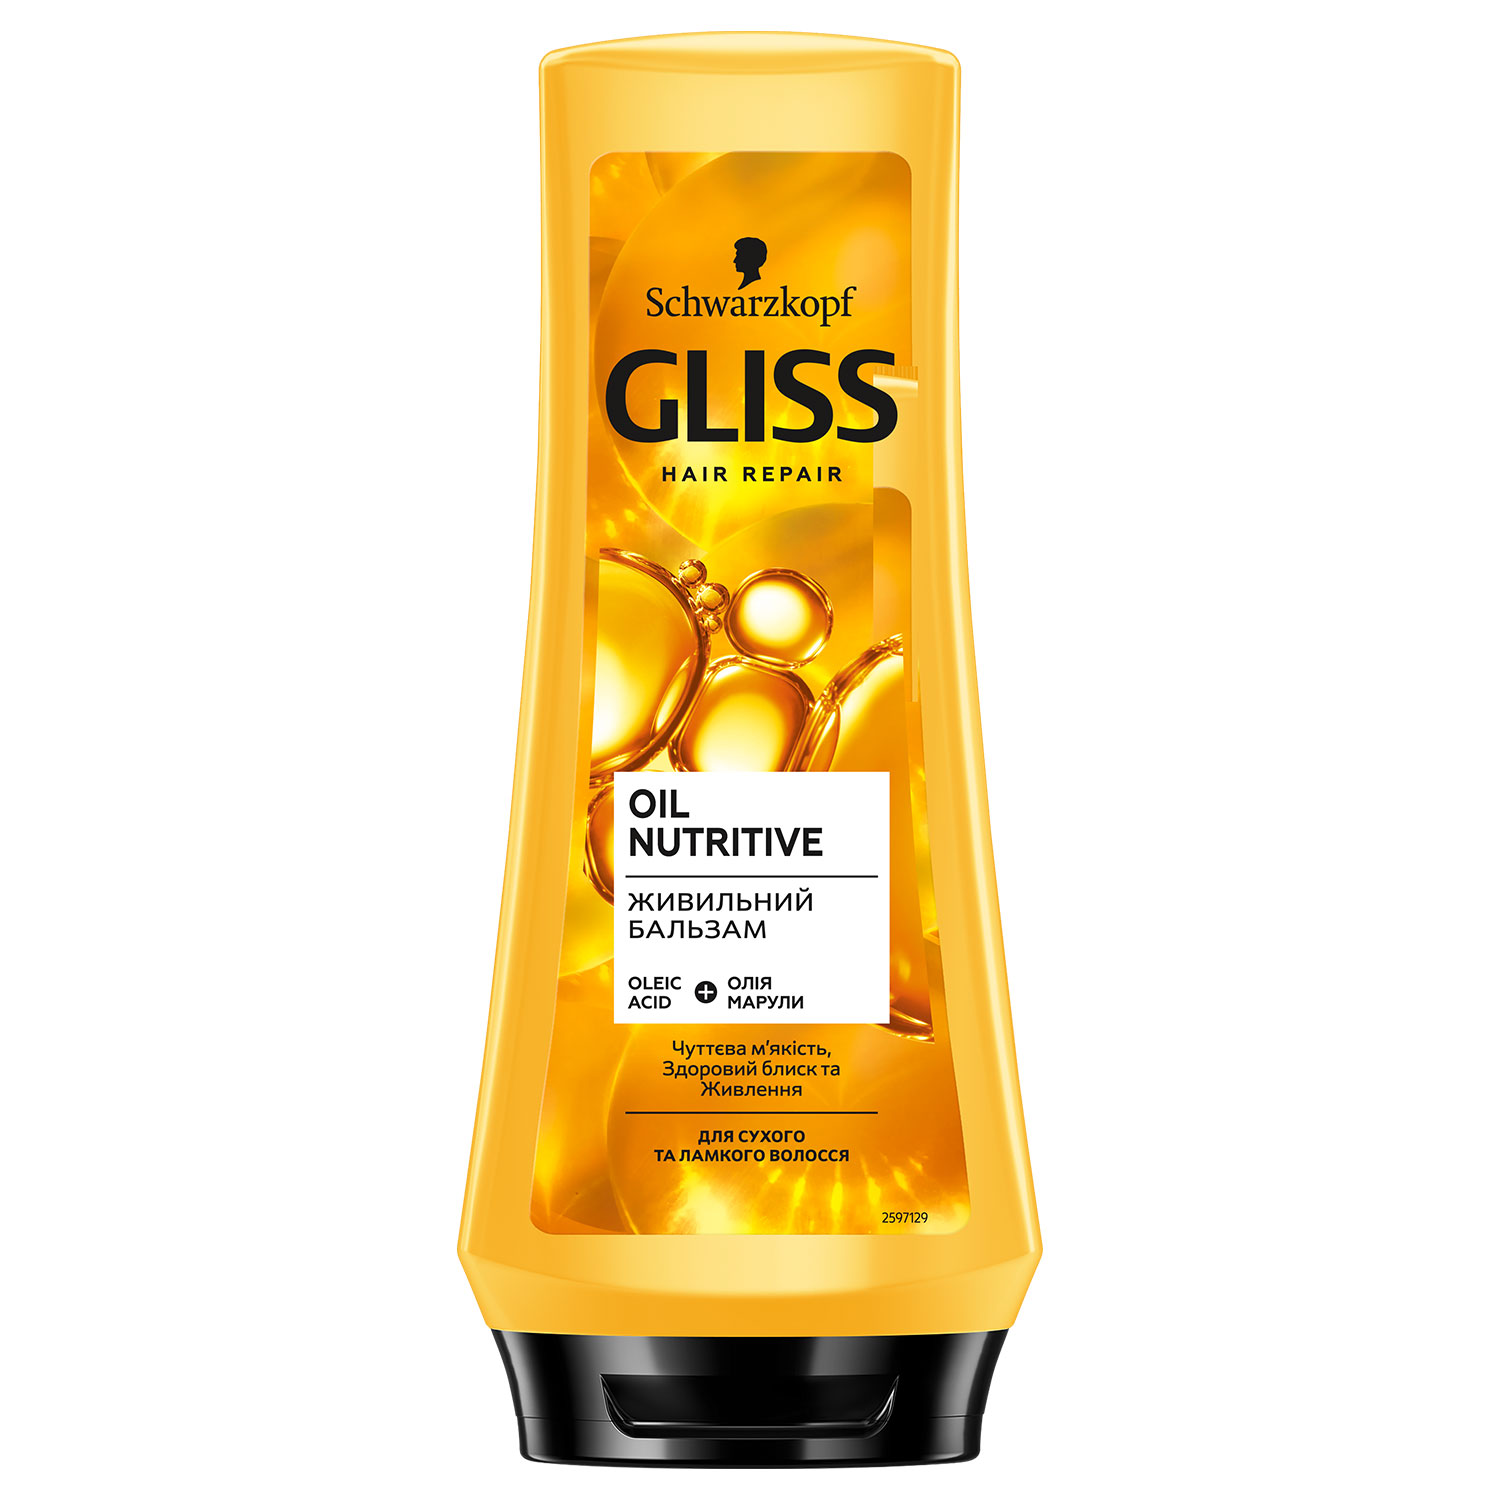 Живильний бальзам GLISS Oil Nutritive для сухого та пошкодженого волосся 200 мл